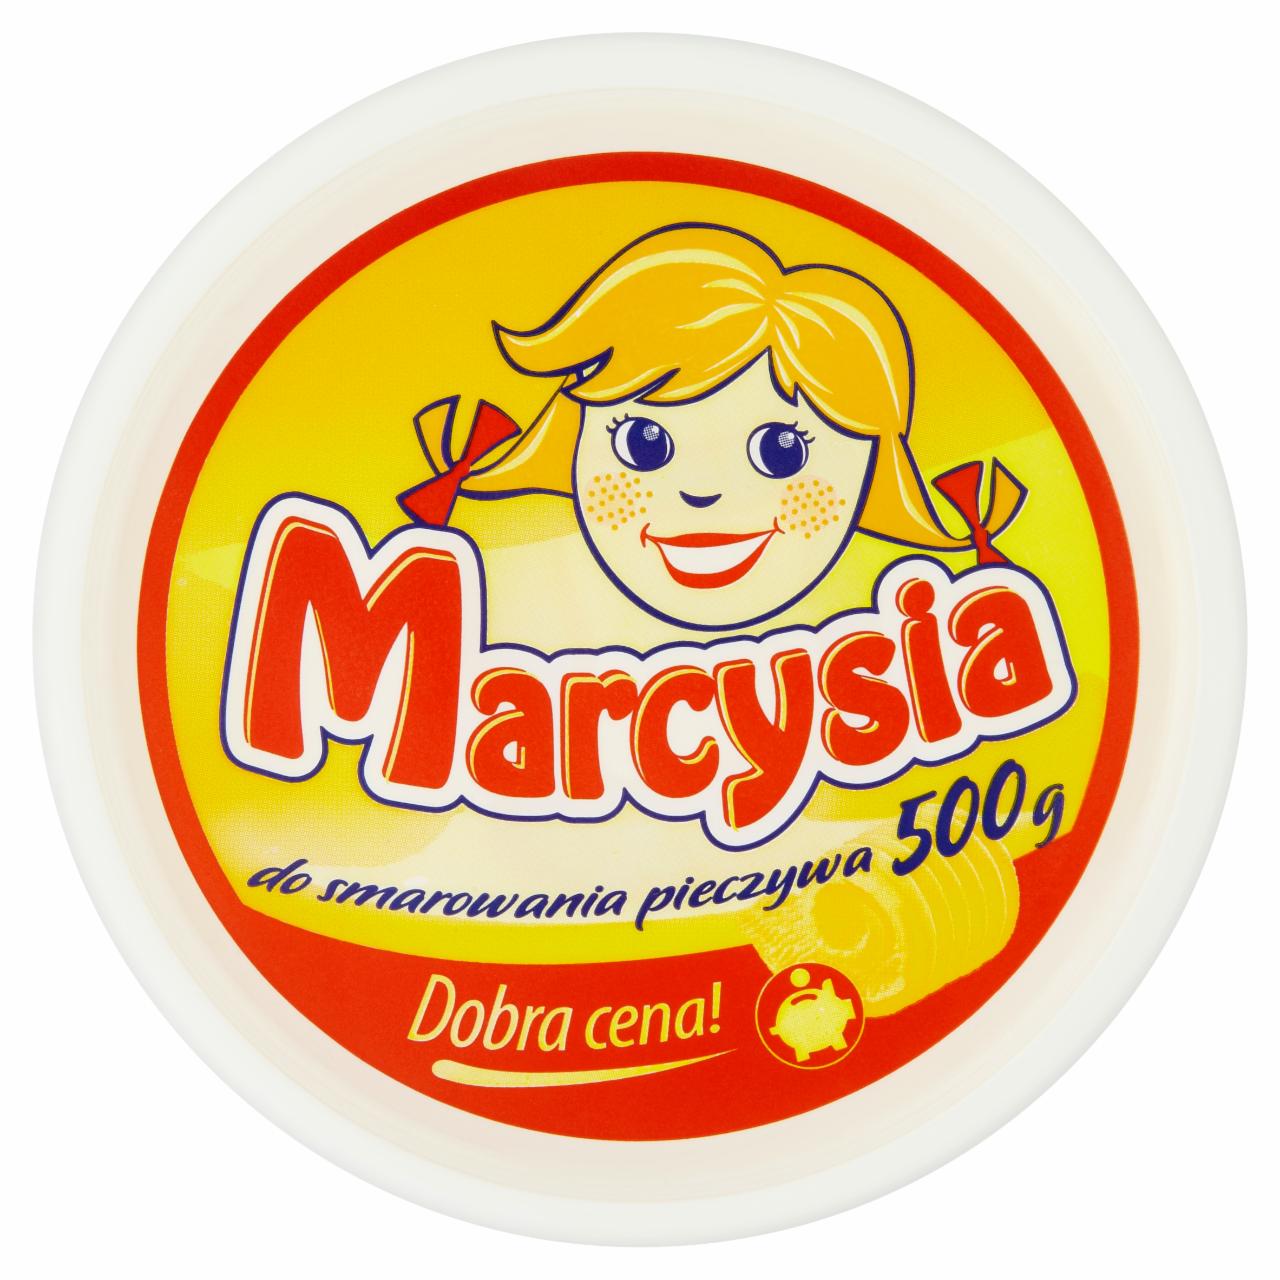 Képek - Marcysia kenhető növényi zsír 500 g